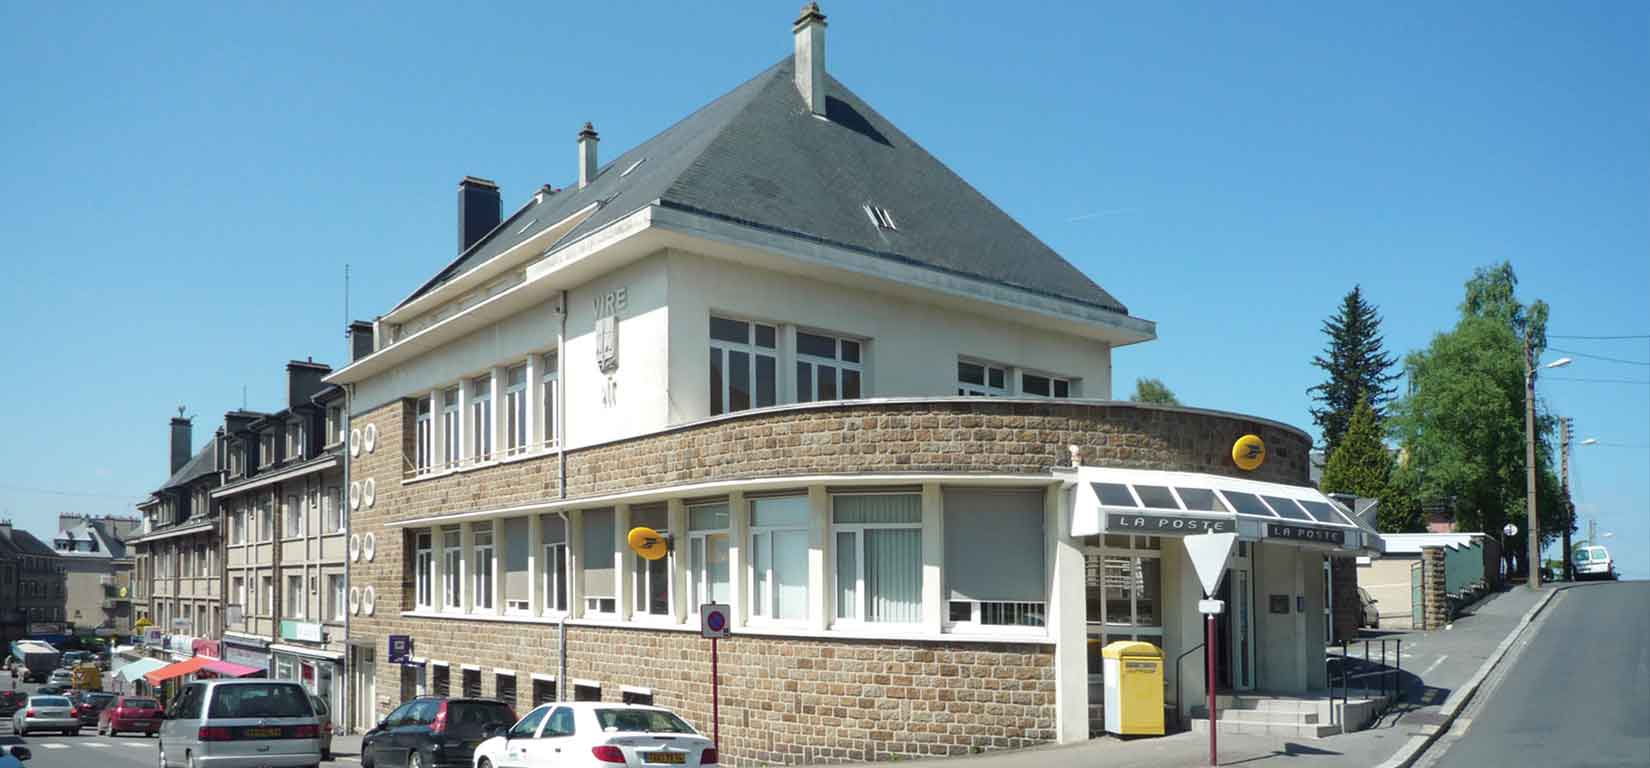 Vue de la poste de Vire Normandie - Credits Delval